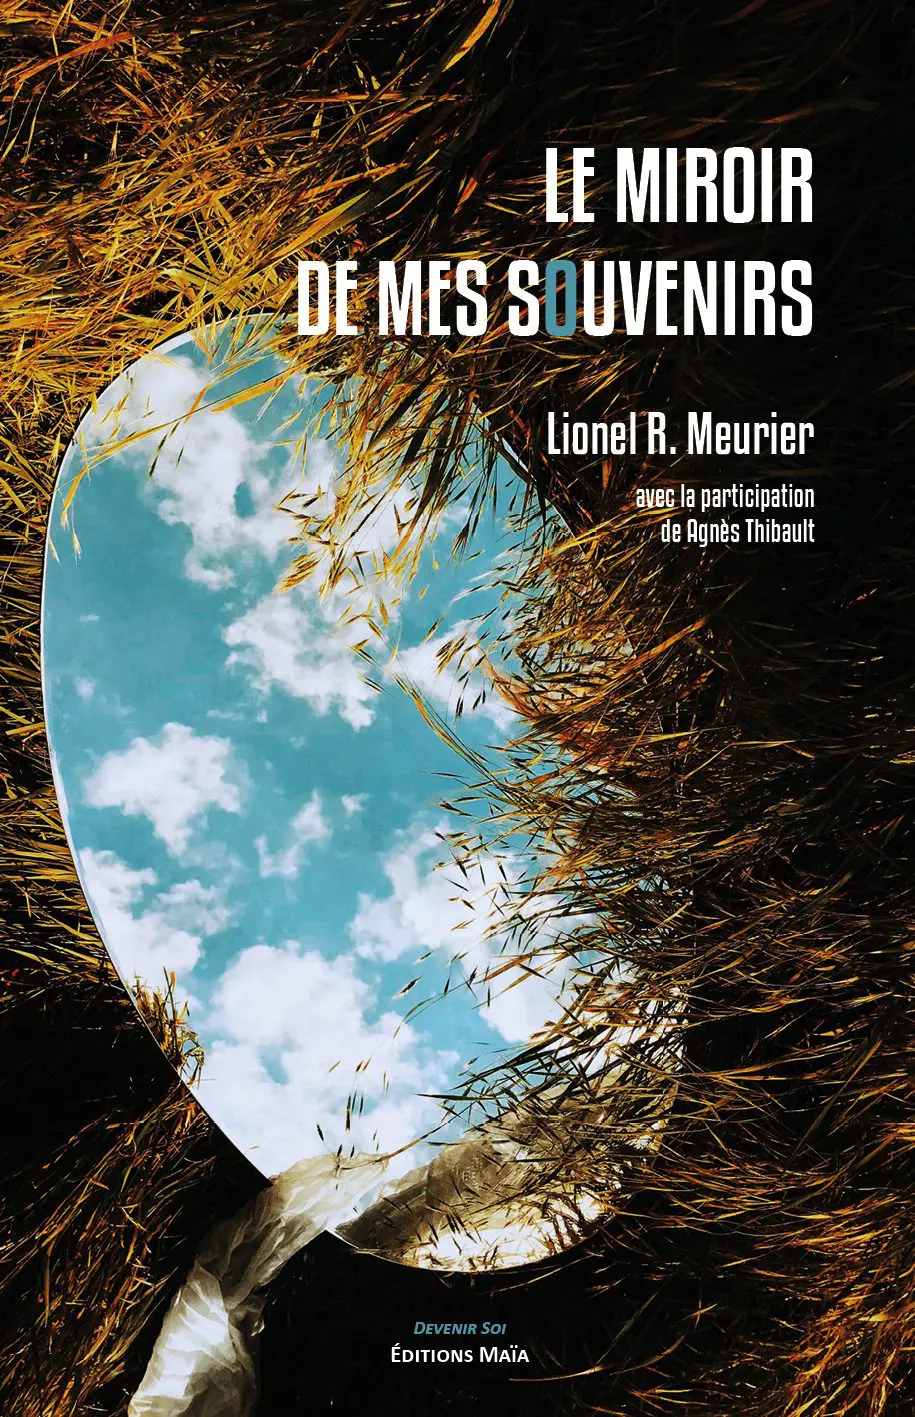 Textes inédits de Lionel R. Meurier